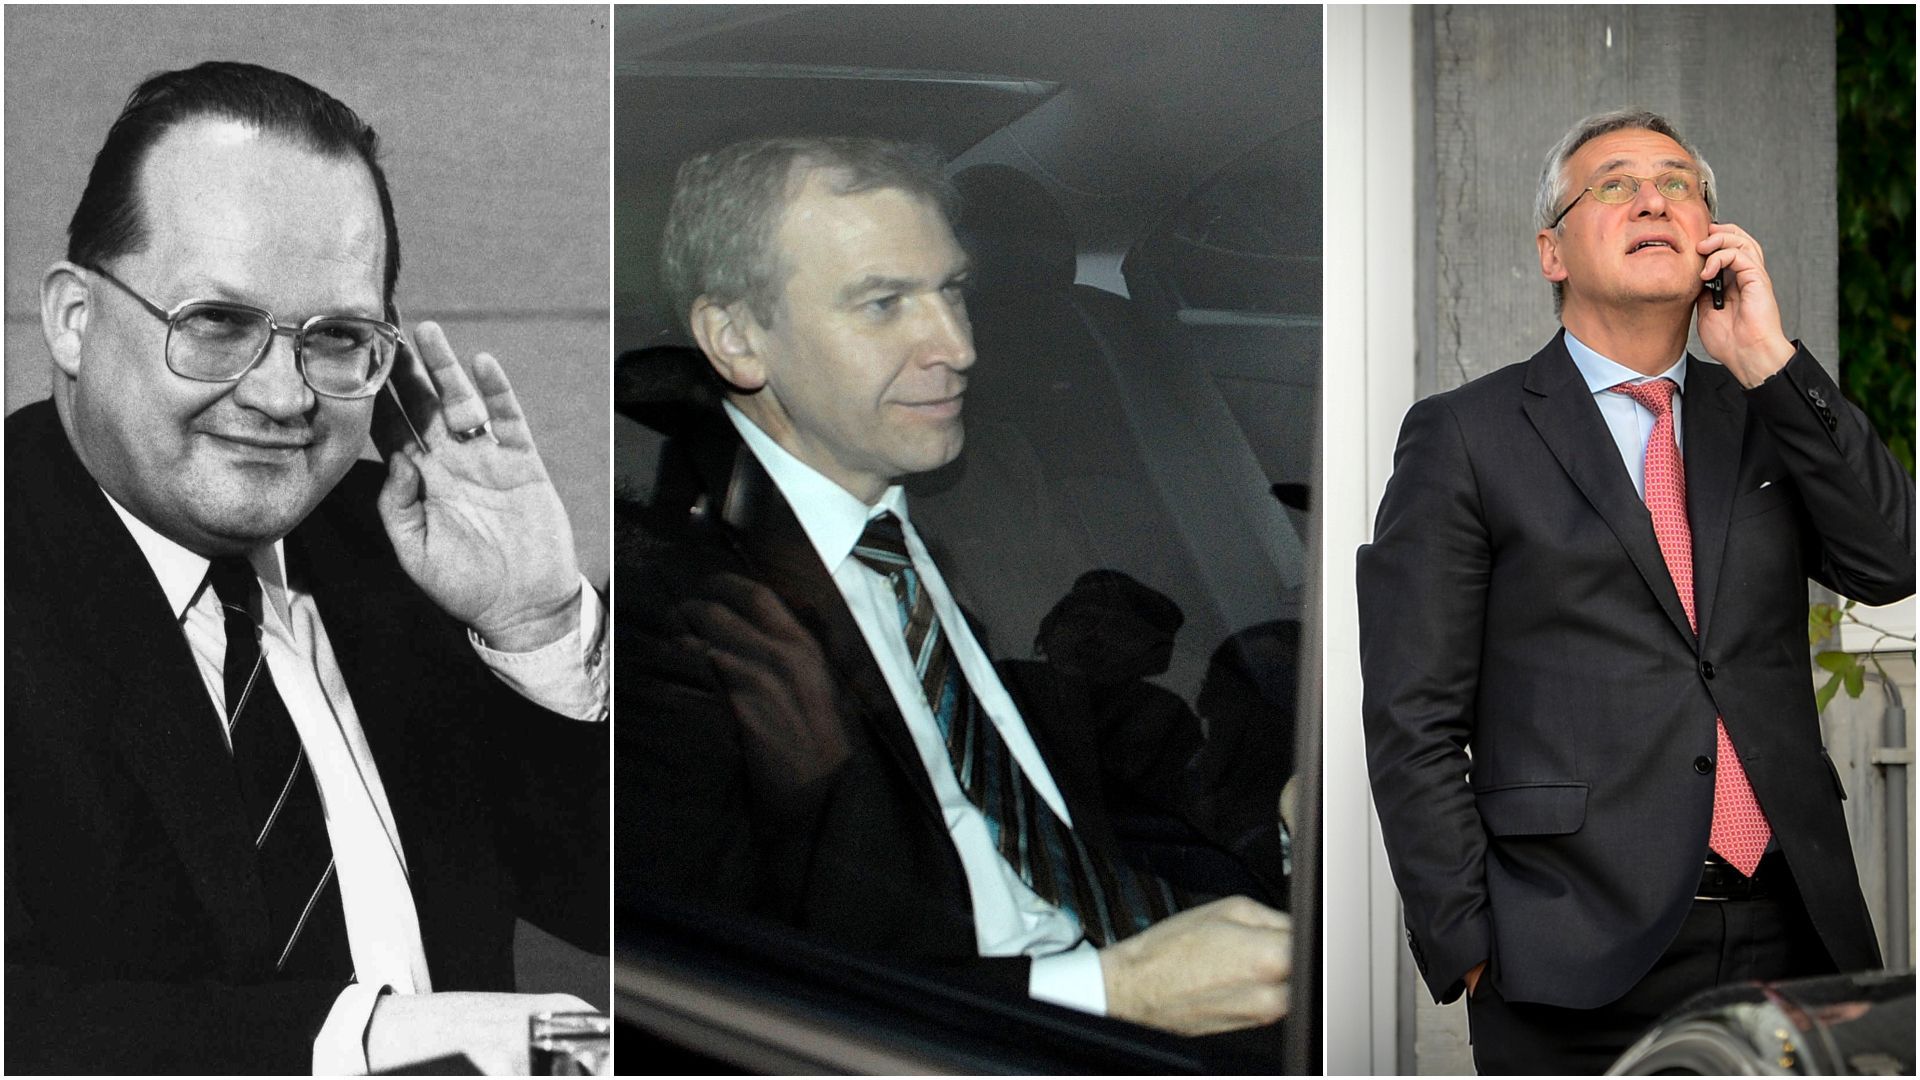 Trois formateurs, Dehaene en 1988, Leterme en 2007 et Peeters en 2014... Trois formateurs qui ne deviendront pas Premier ministre, du moins, pas cette fois-là. 